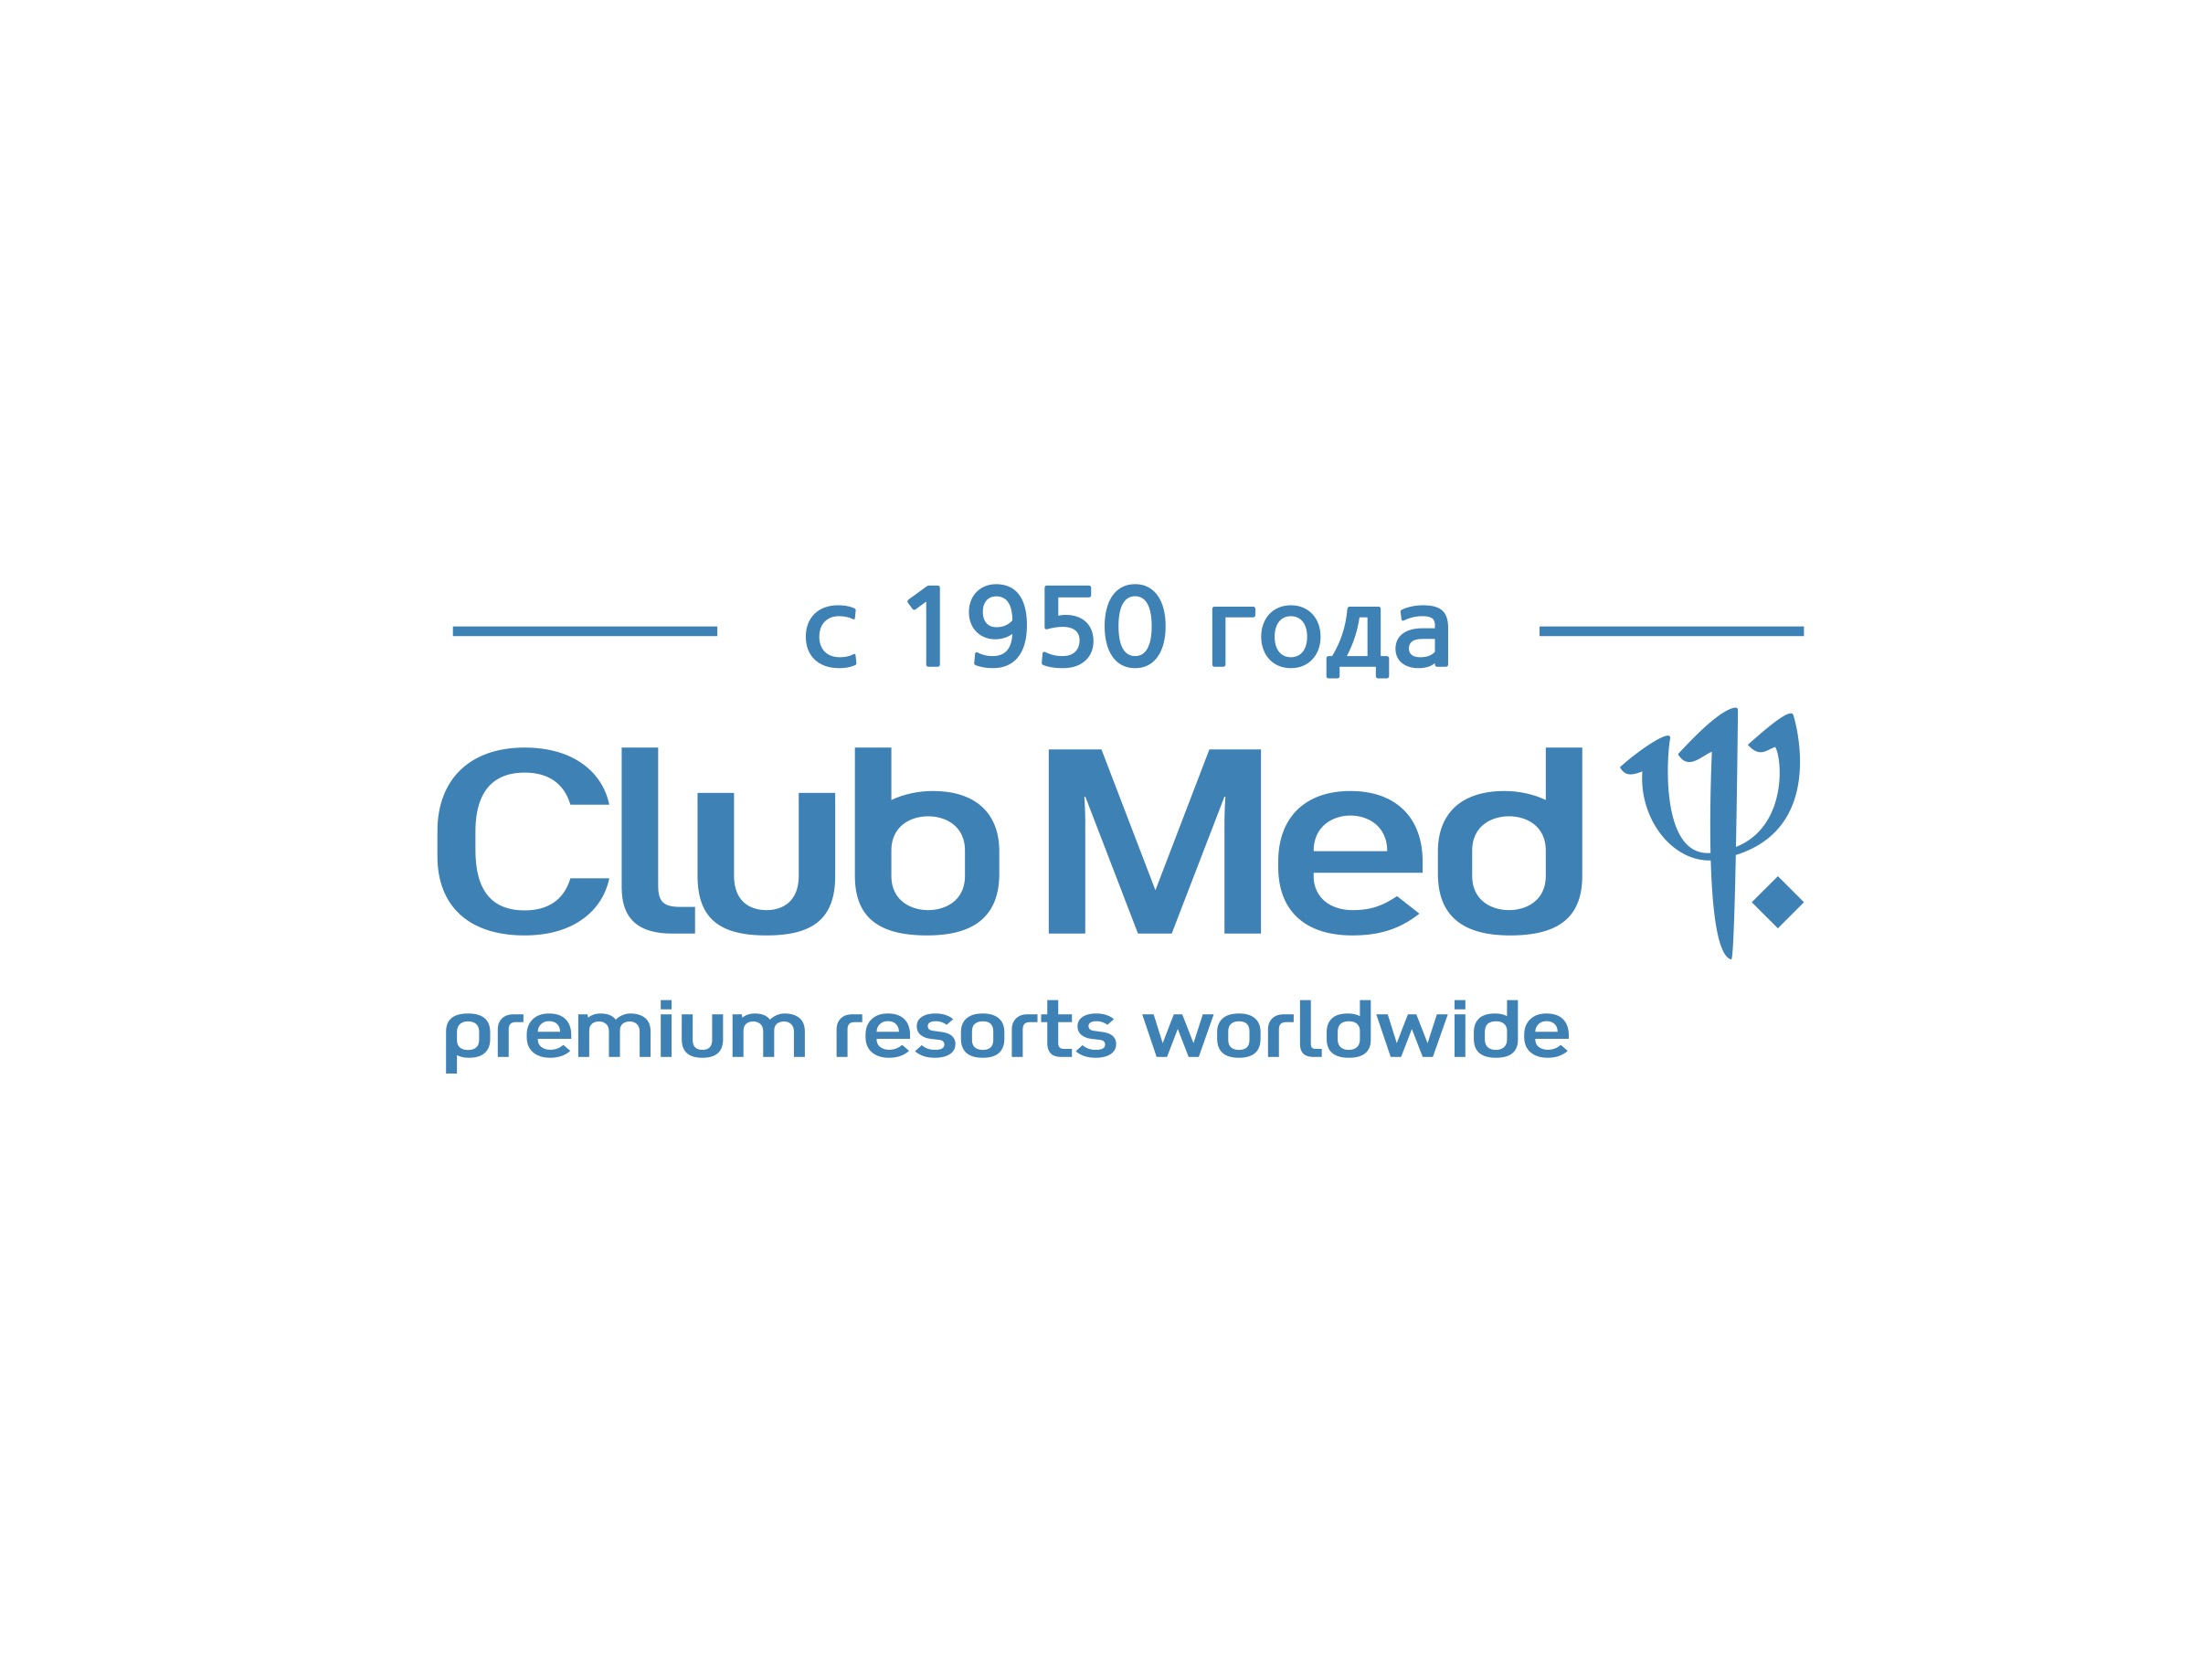 Отдых по системе Club Med